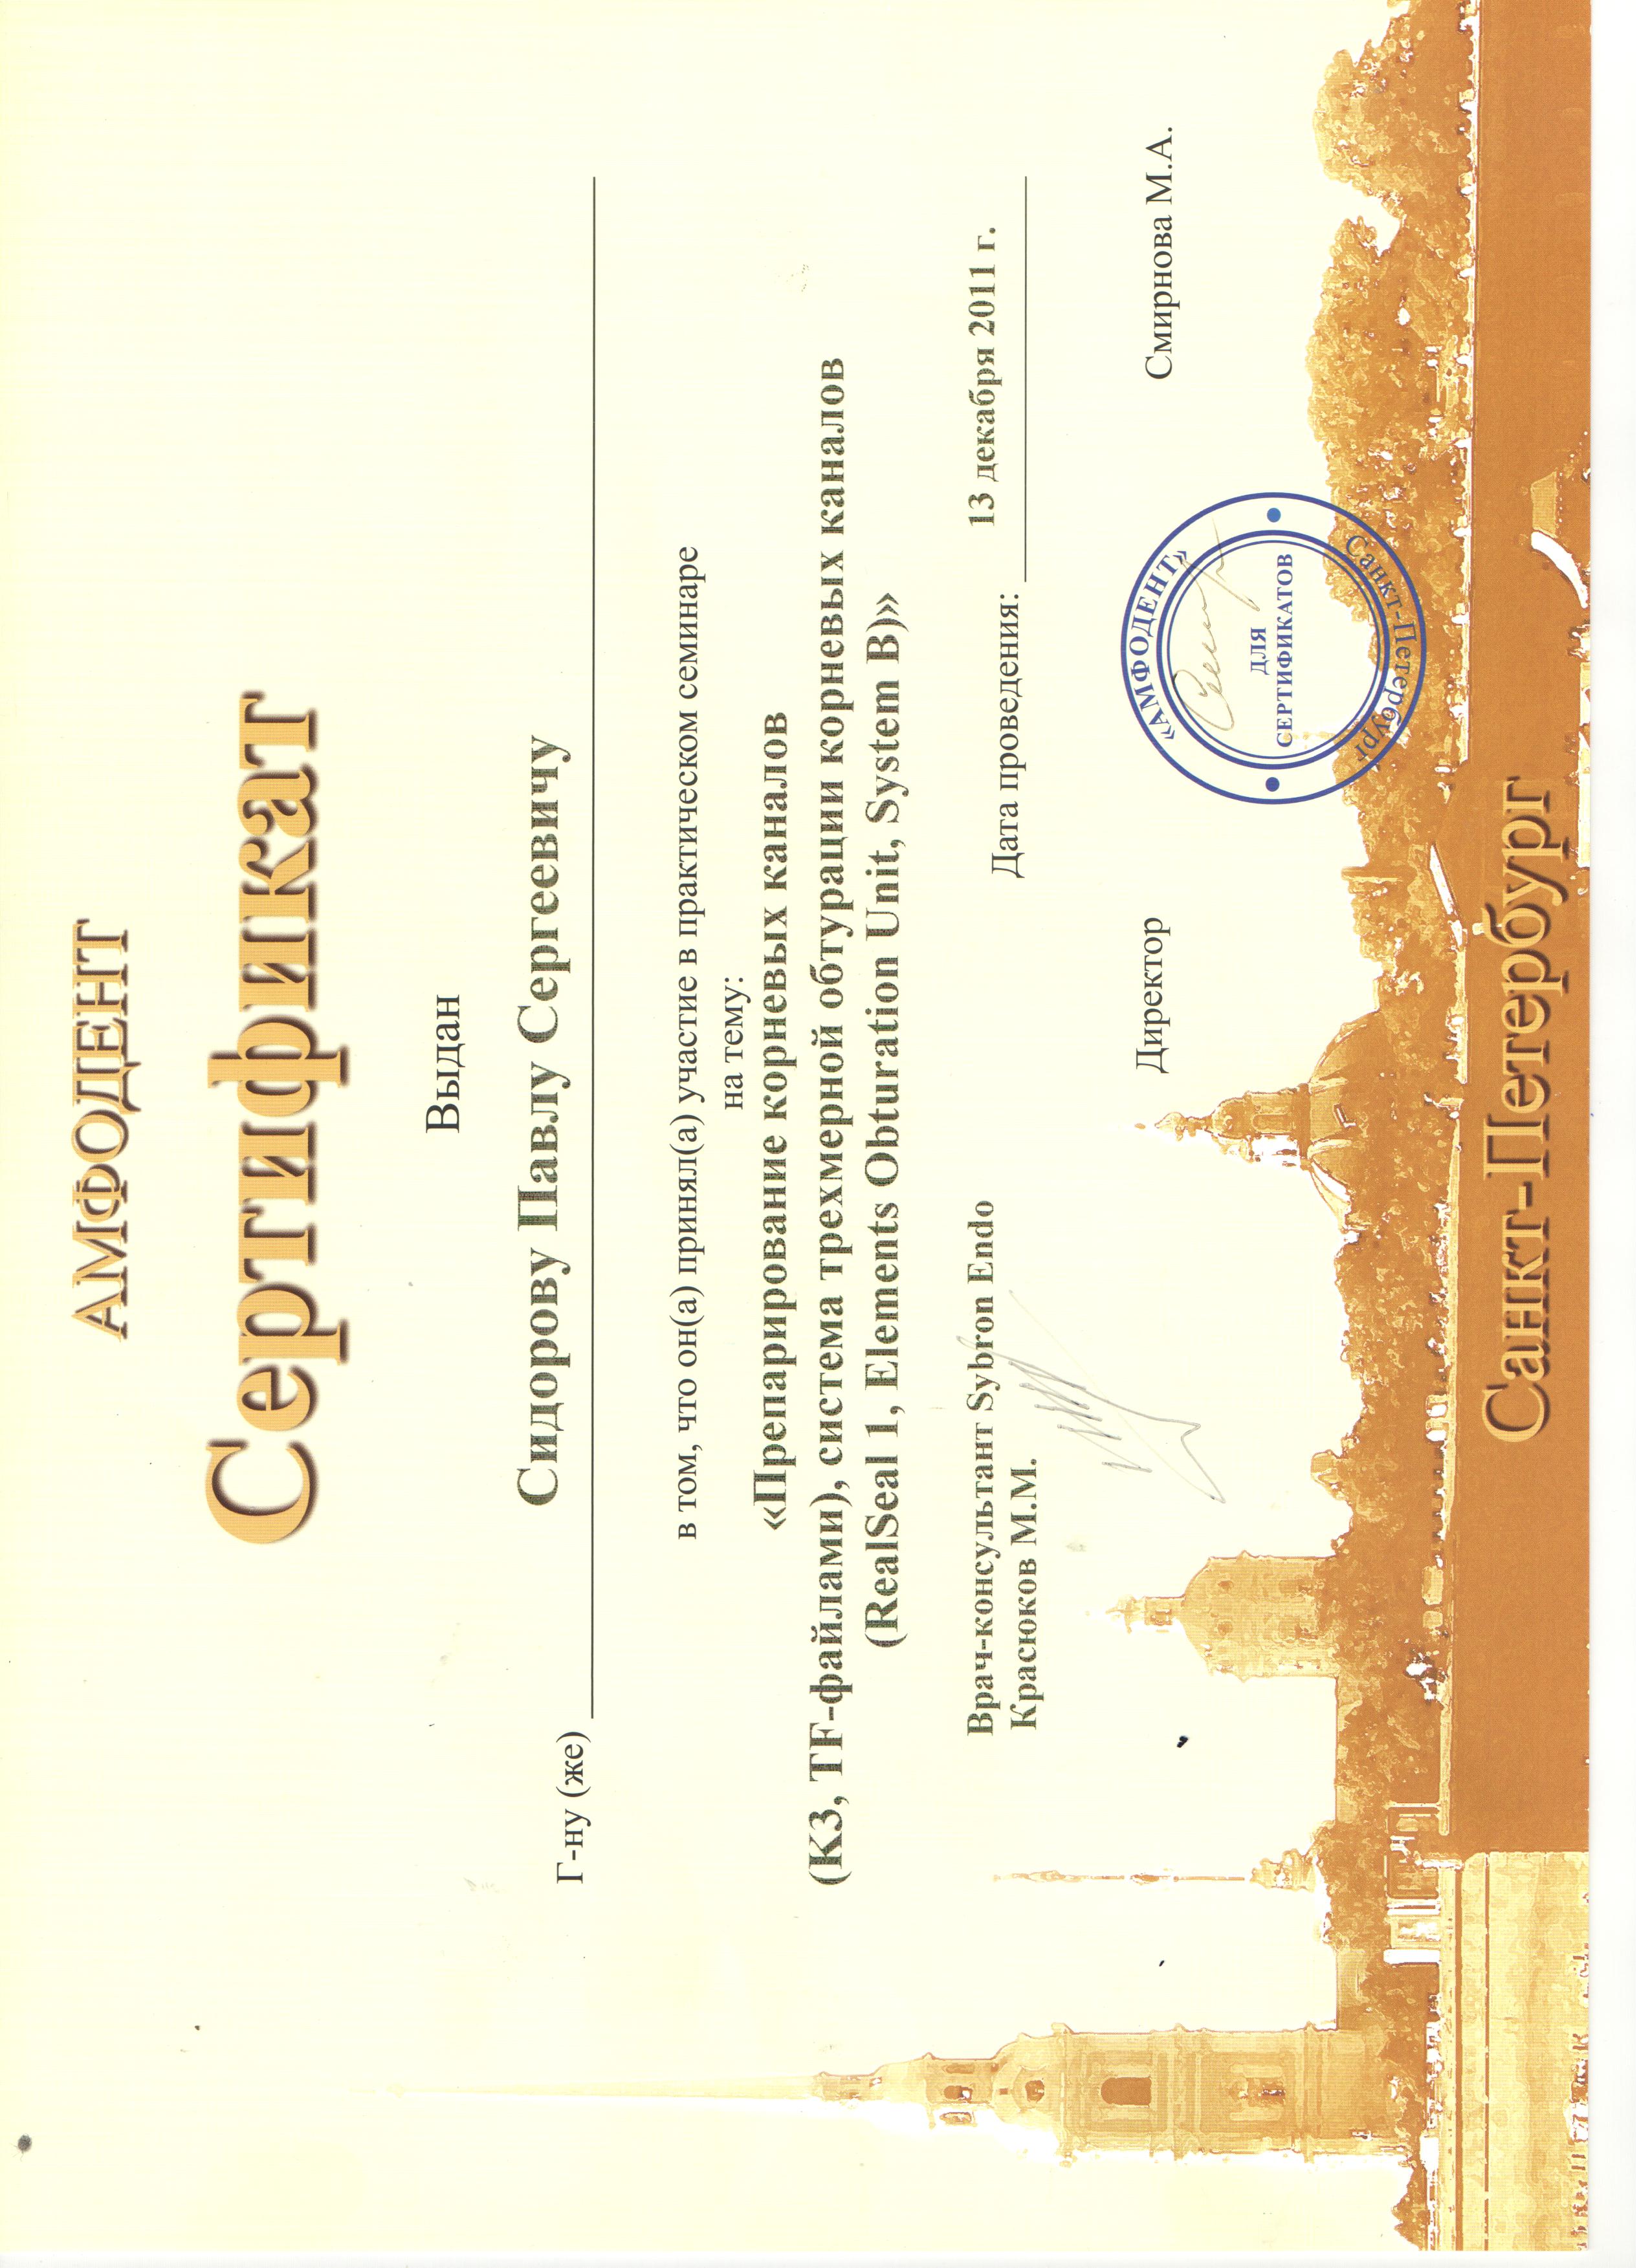 сертификат Кротовой